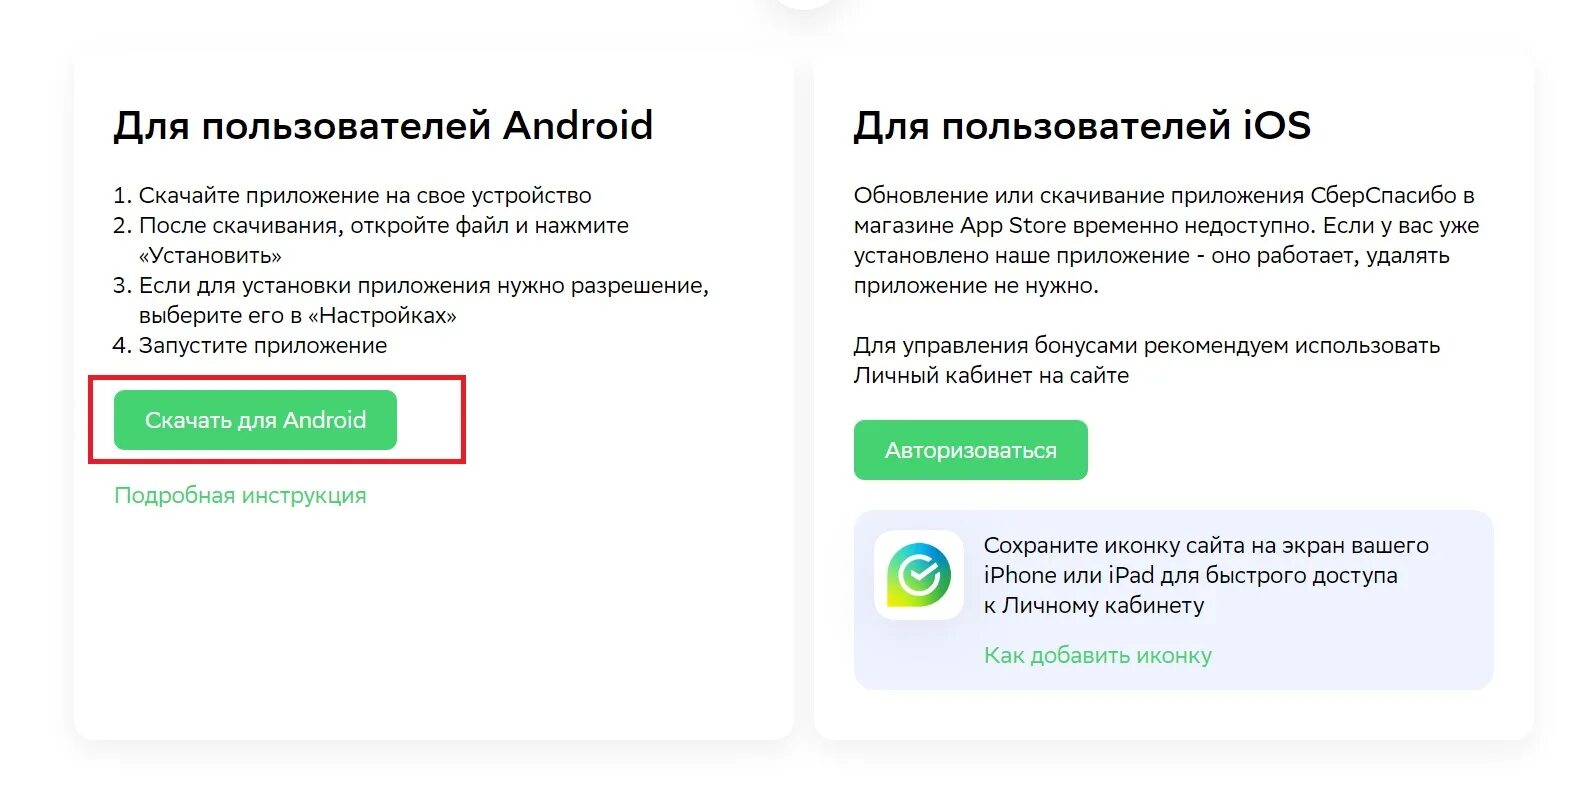 Приложение сберспасибо на айфон. Сберспасибо как настроить и пользоваться. Приложение сберспасибо для андроид на русском с официального сайта. Сбер портал.